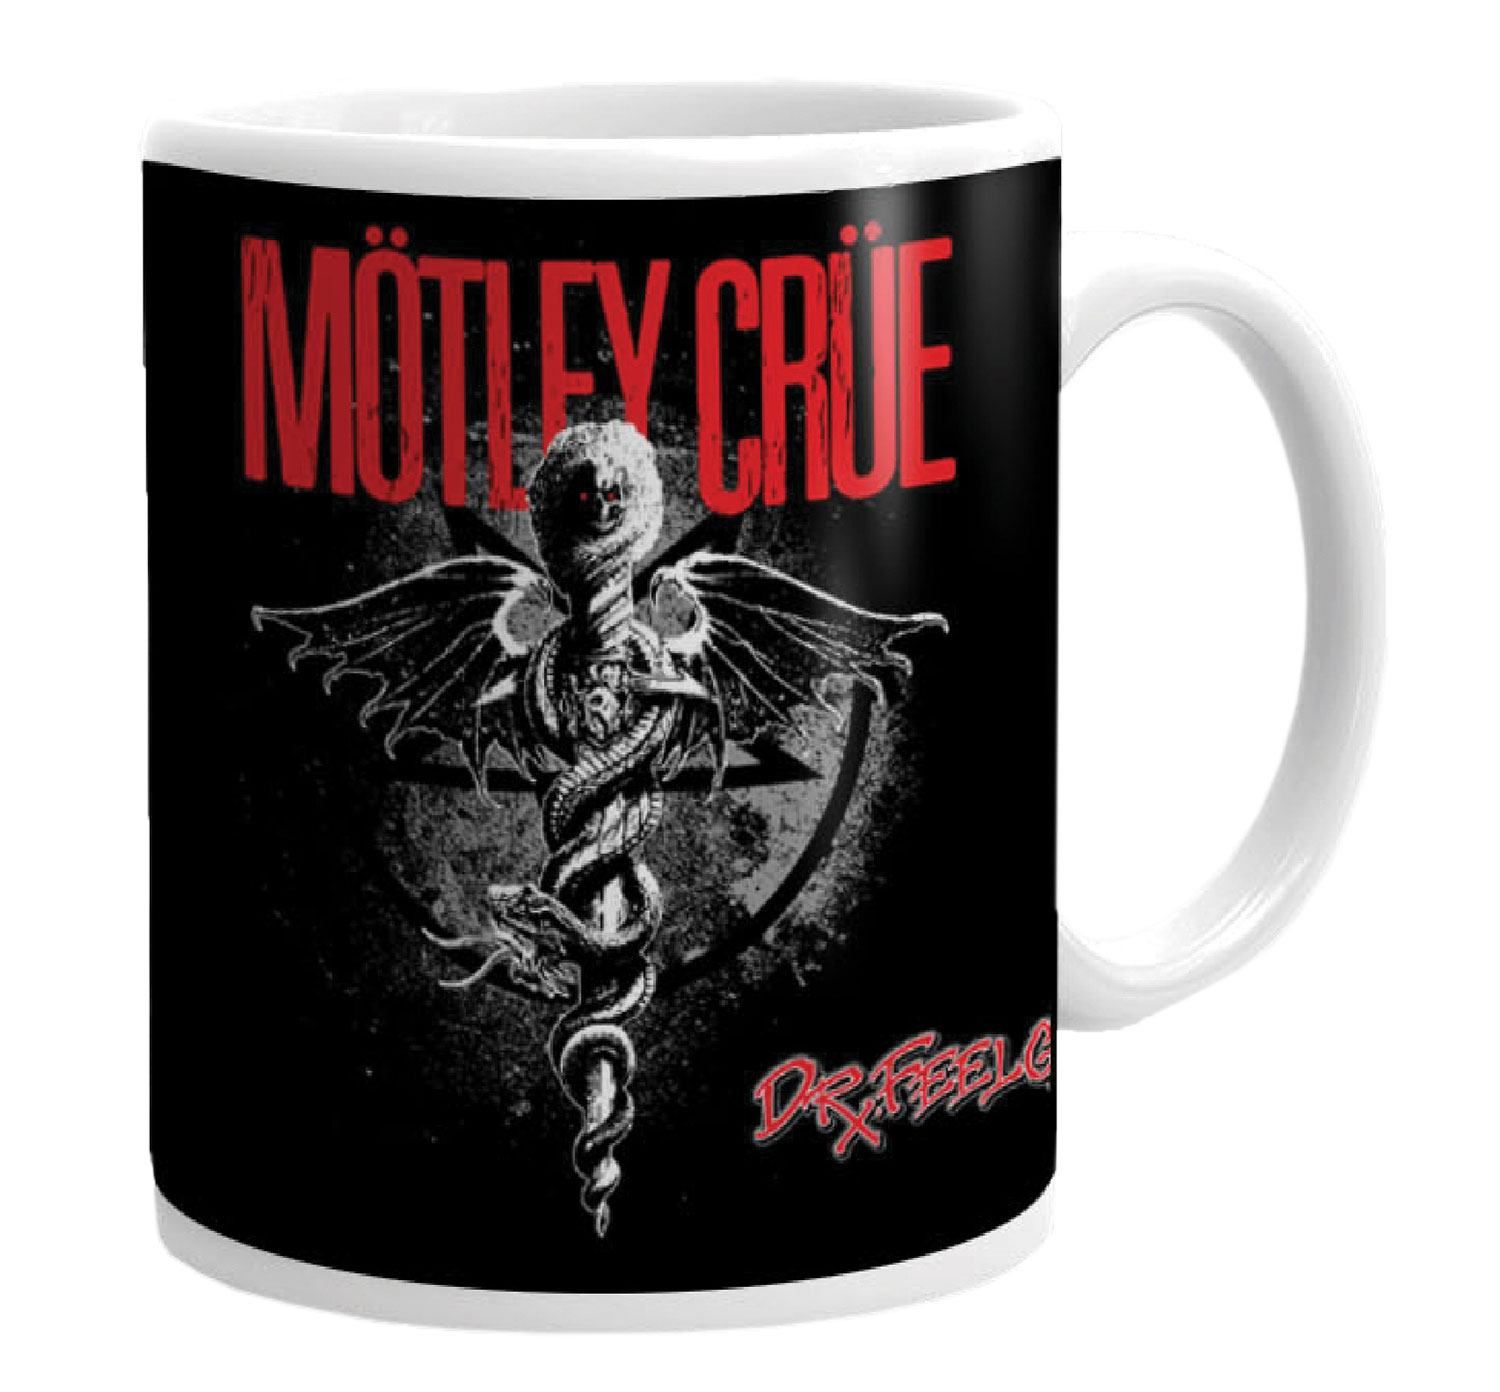 Mötley Crüe Mug Dr. Feelgood KKL